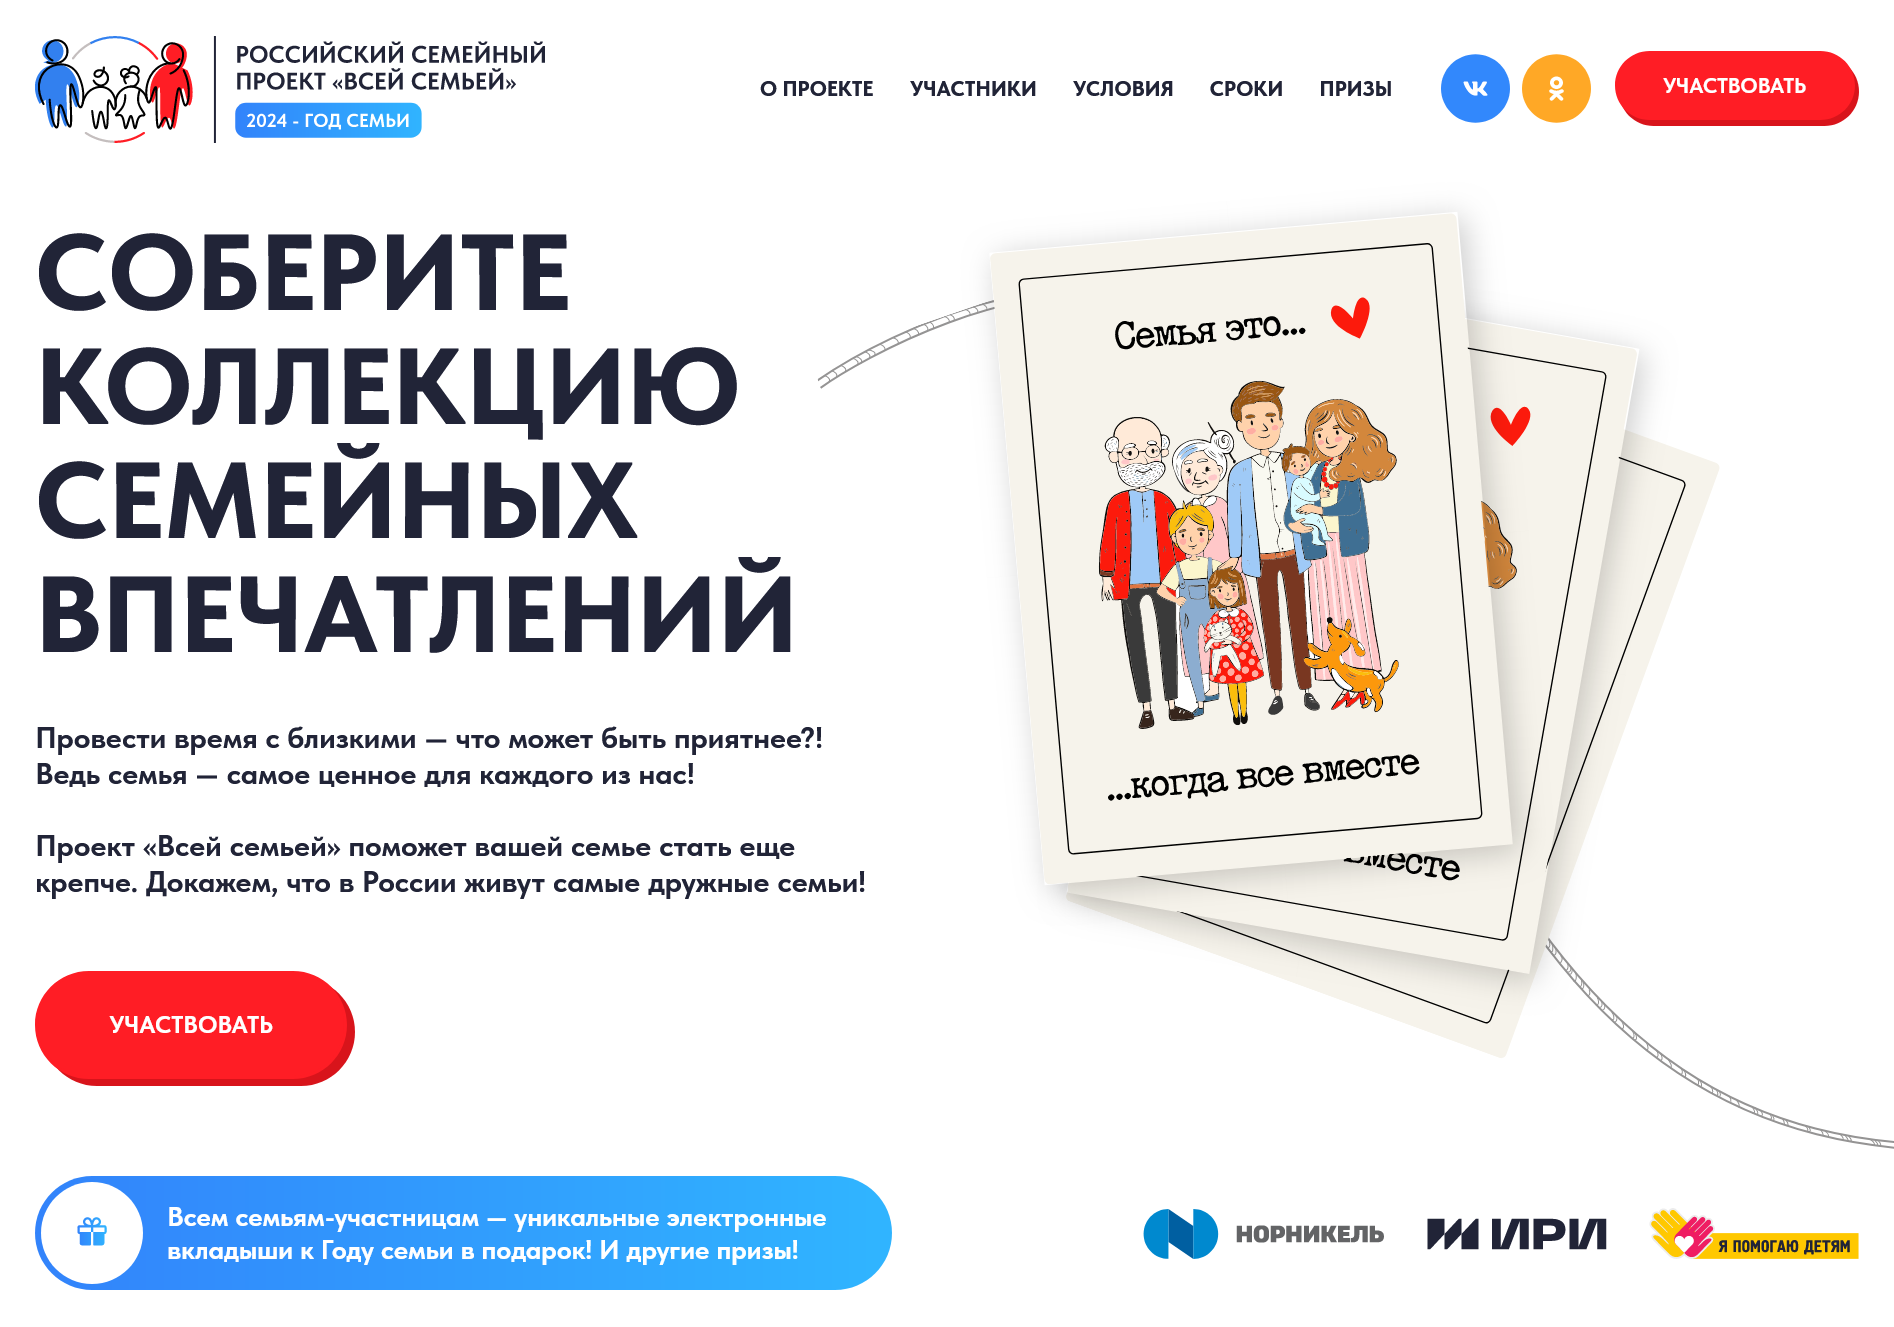 Российский семейный проект «Всей семьей»